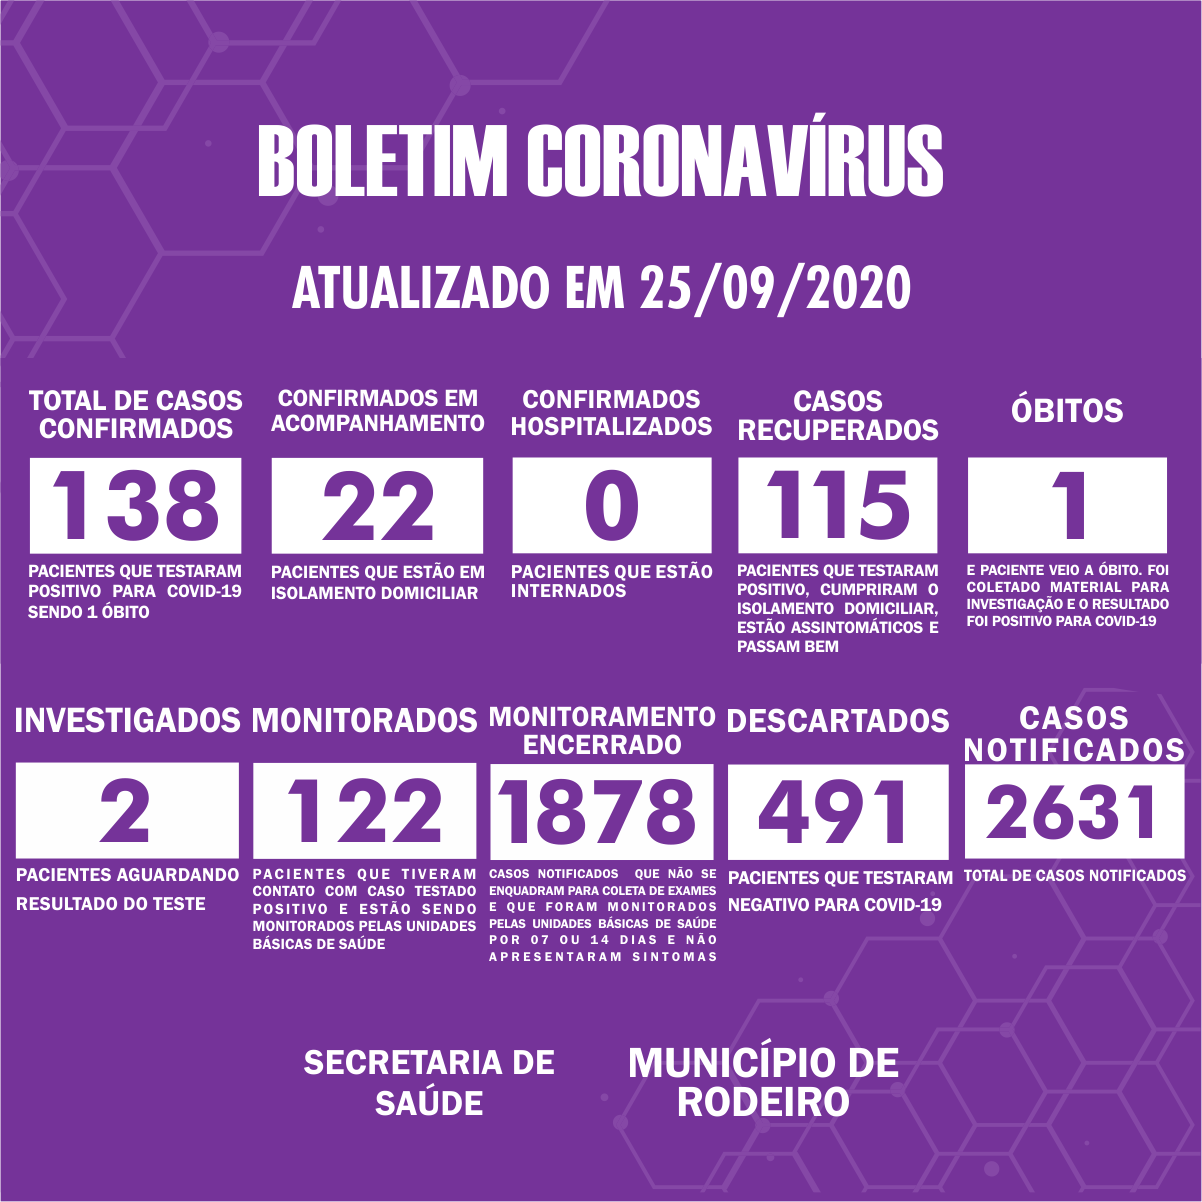 Boletim Epidemiológico do Município de Rodeiro sobre coronavírus, atualizado em 25/09/2020